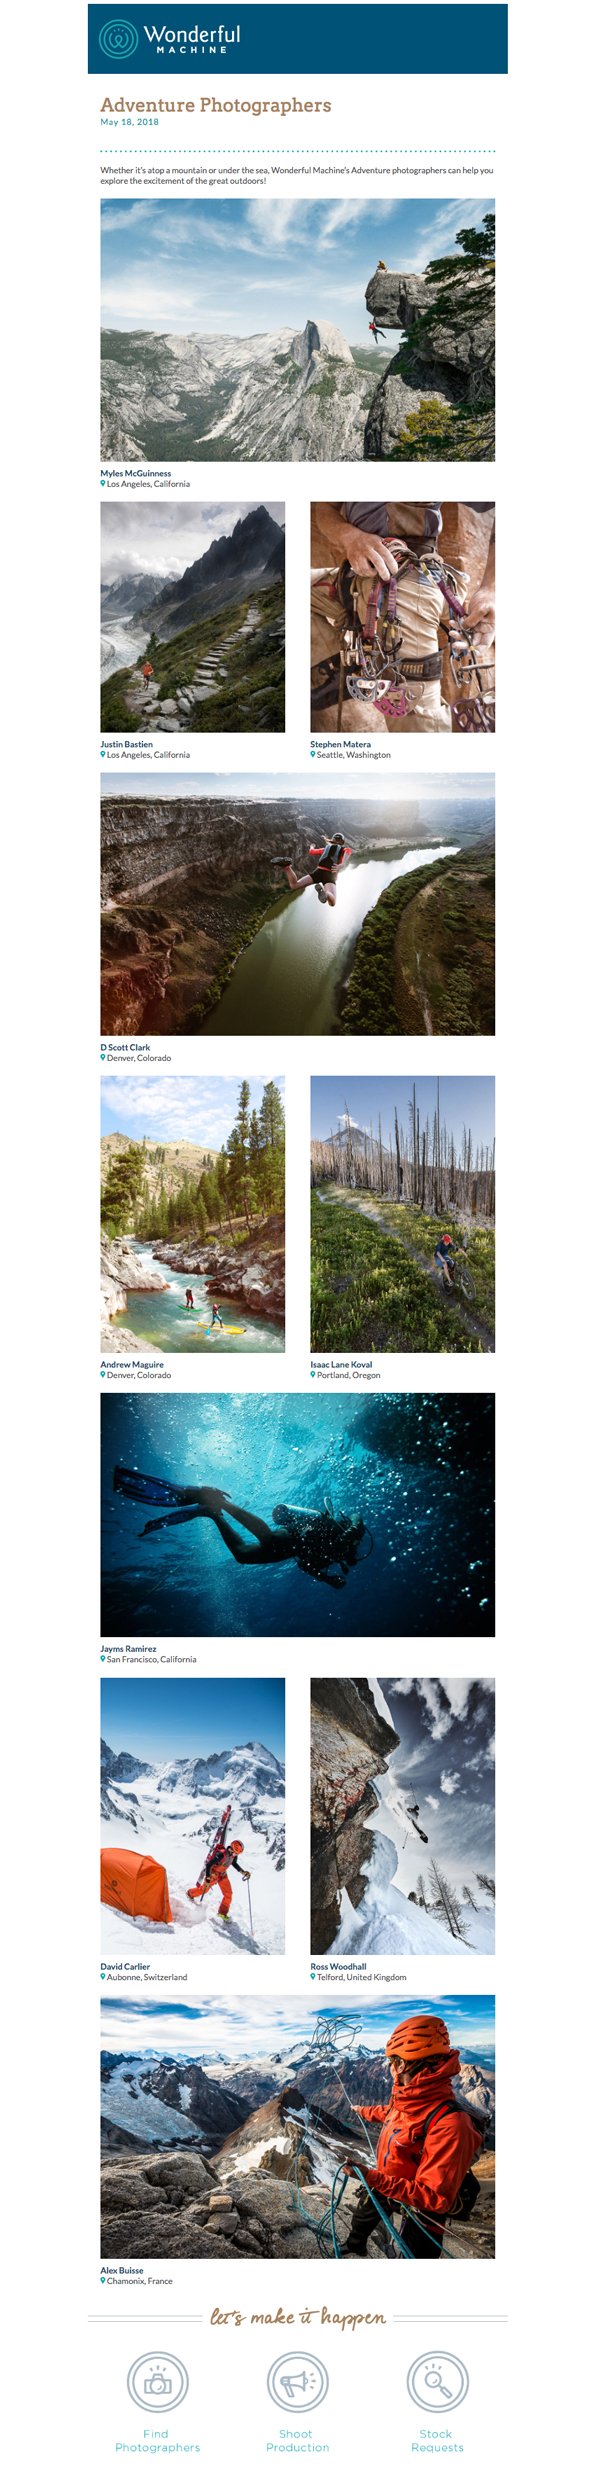 screenshot of Wonderful Machine's Adventure Photographers mailer